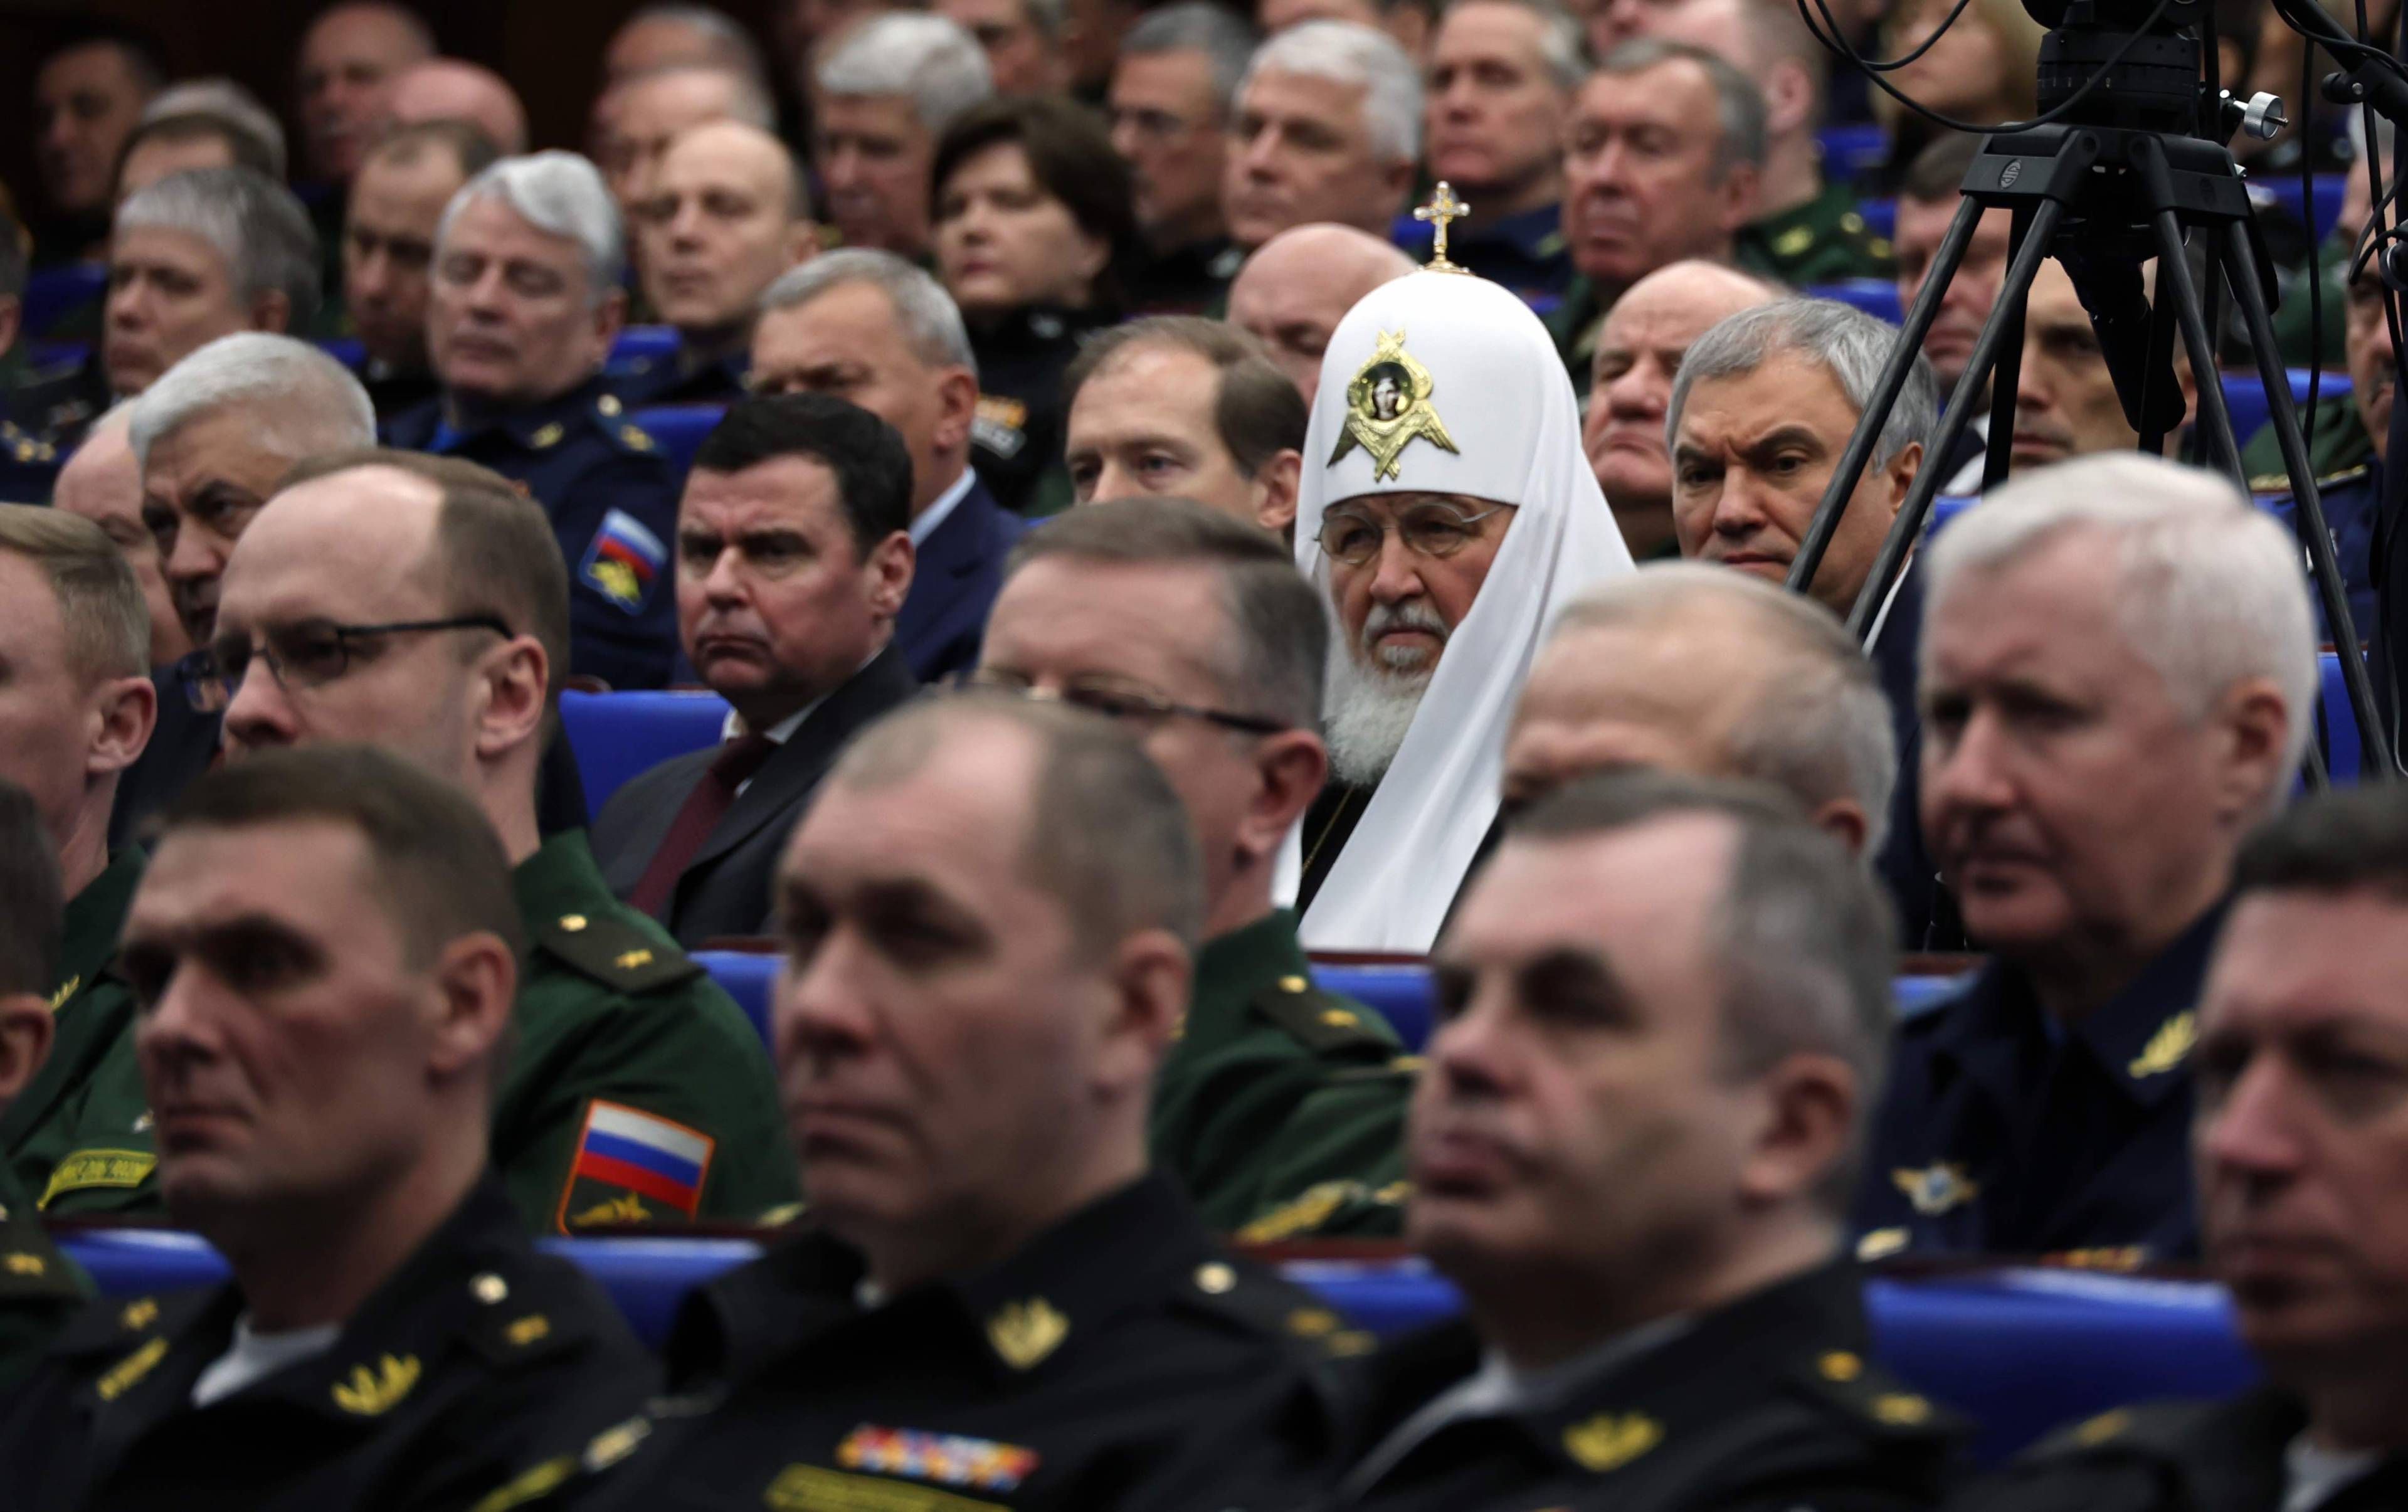 duchowny prawosławny a ceremonialnym białym nakryciu głowy z krzyżem siedzi na sali wśród wojskowych